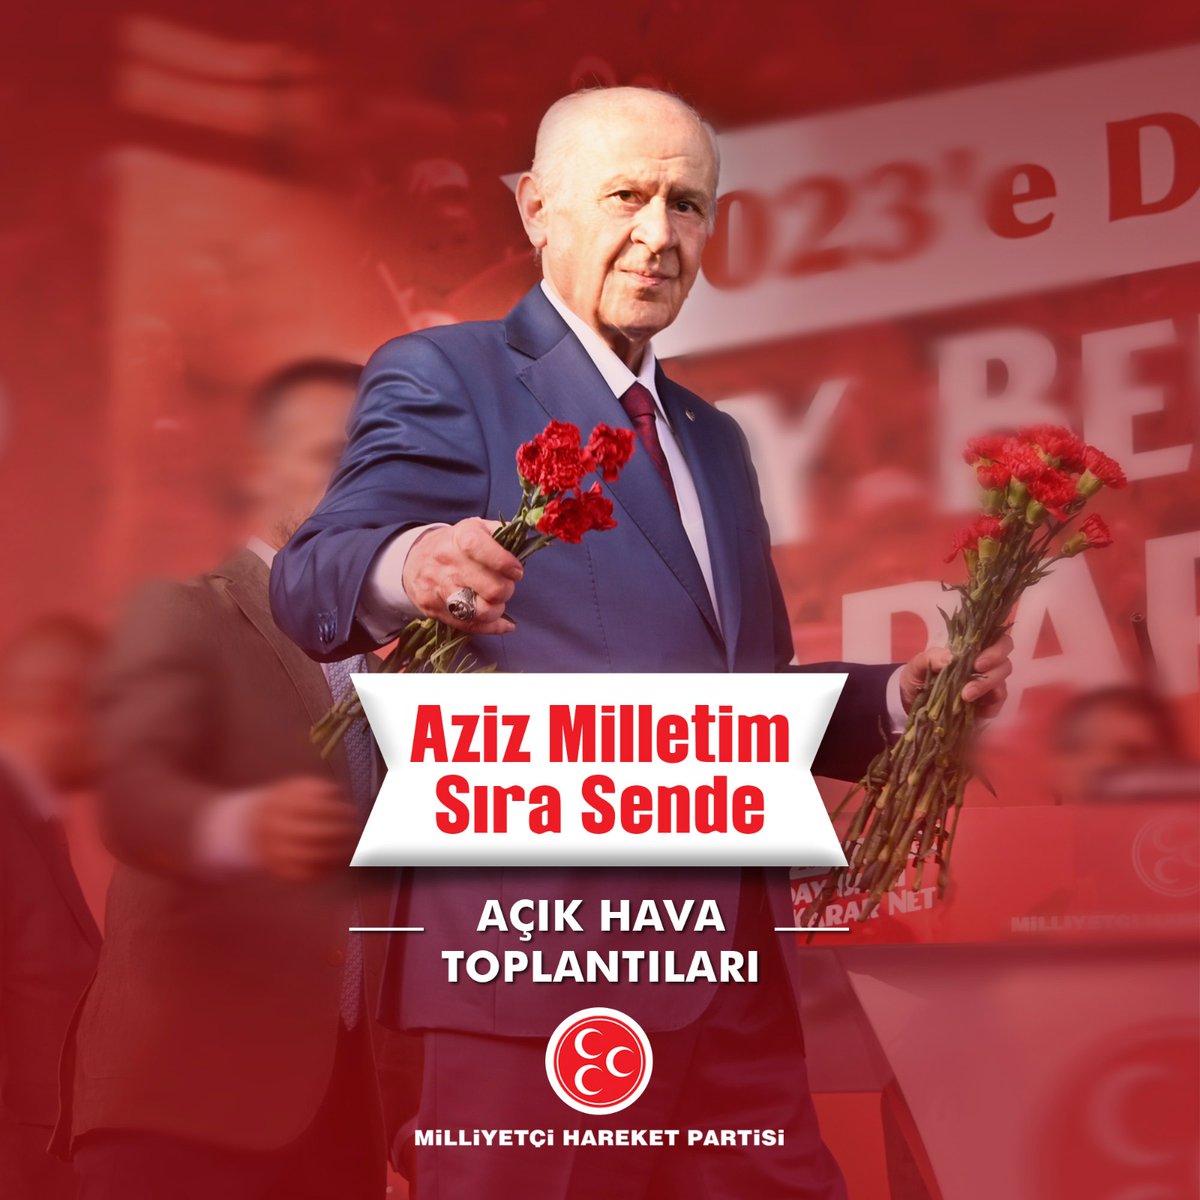 Cumhur İttifakı’na verilen her oy Türk ve Türkiye Yüzyılına destek, zalimlere tepki, teröristlere ceza, huzura davet, bereket ve güvenliğe çağrıdır. Nihayetinde ve nitekim 2023 seçimlerinde kullanacağımız ana sloganla sesleniyorum: “AZİZ MİLLETİM SIRA SENDE.”